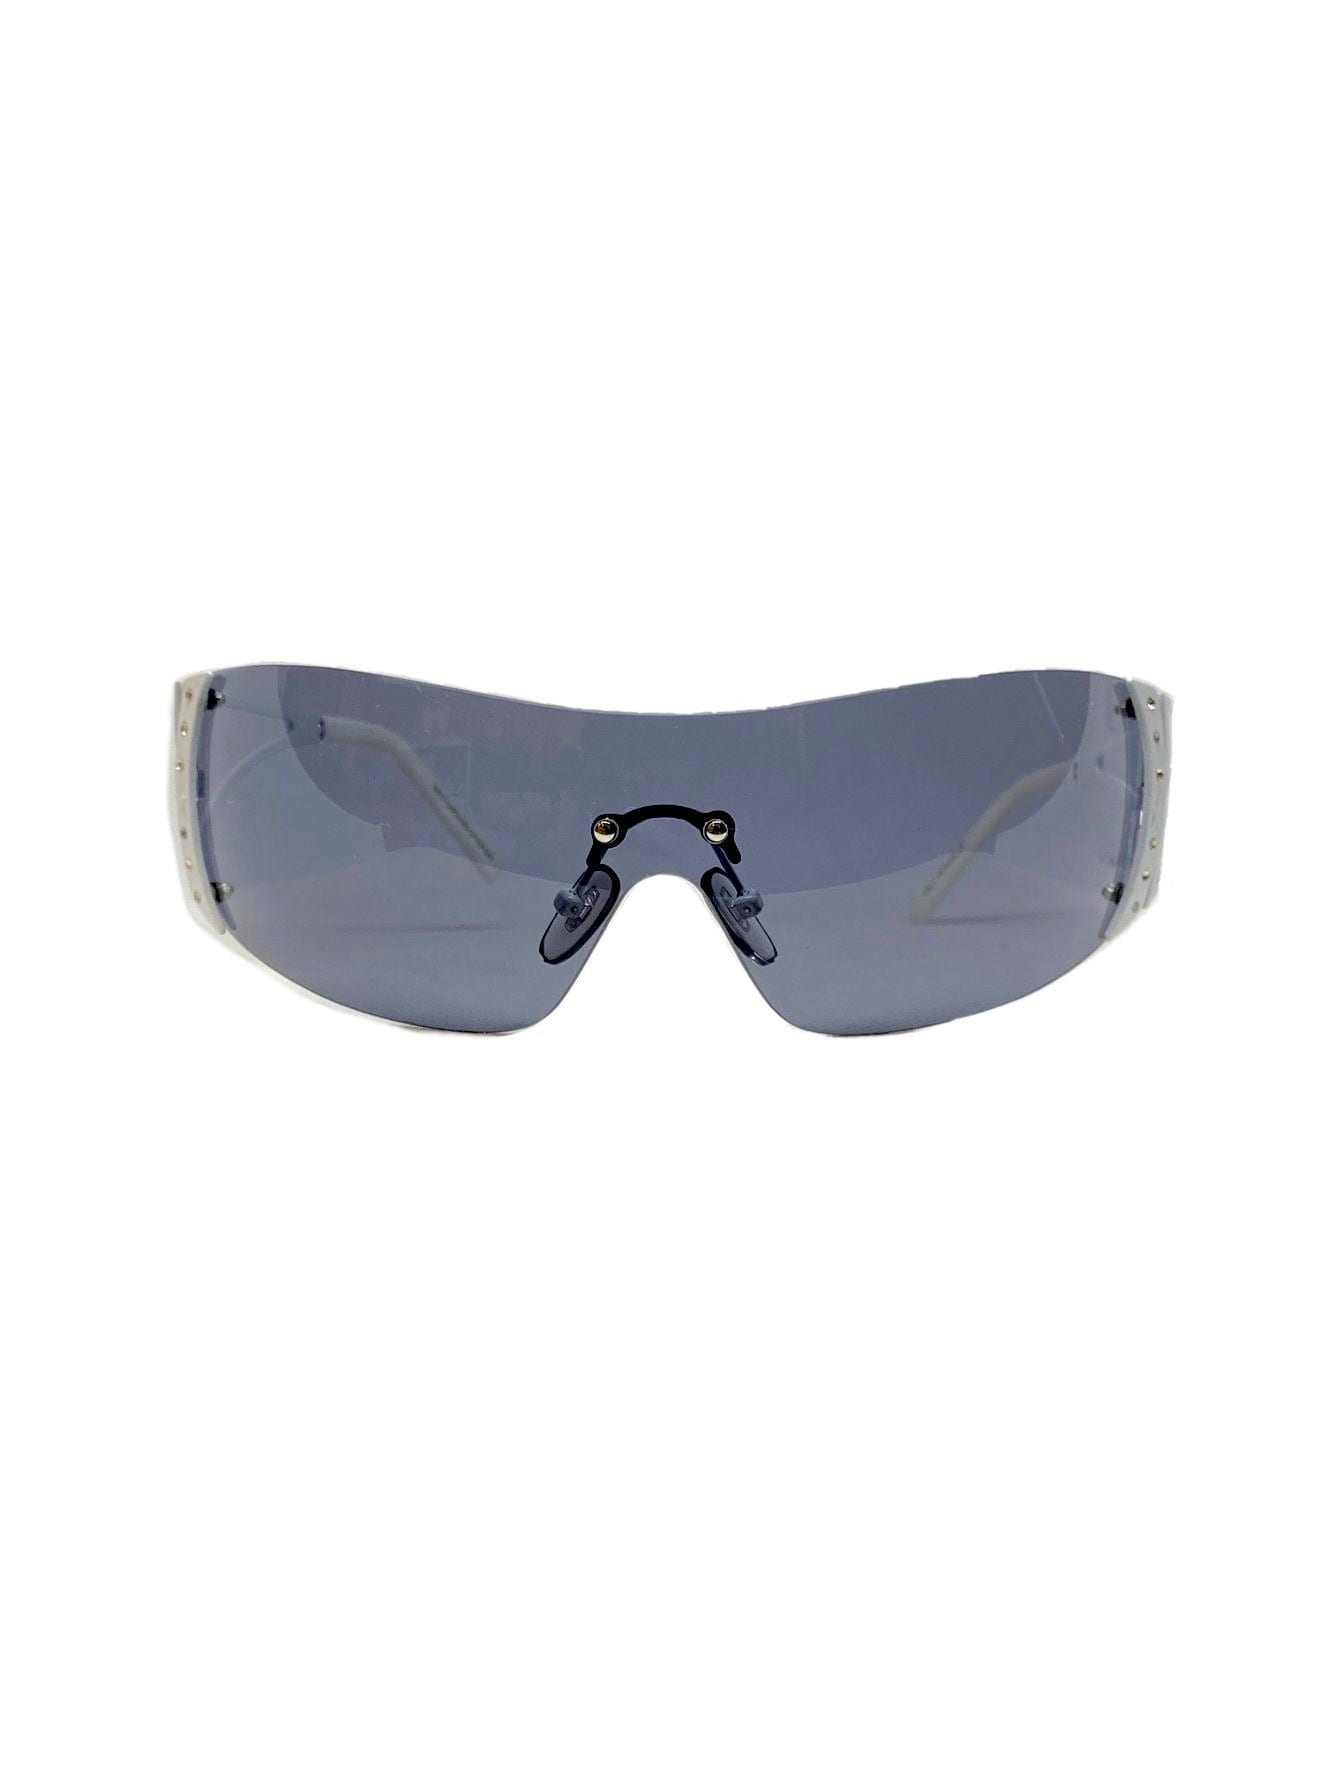 BARBZ White/Super Dark Rimless Fashion Sunglasses